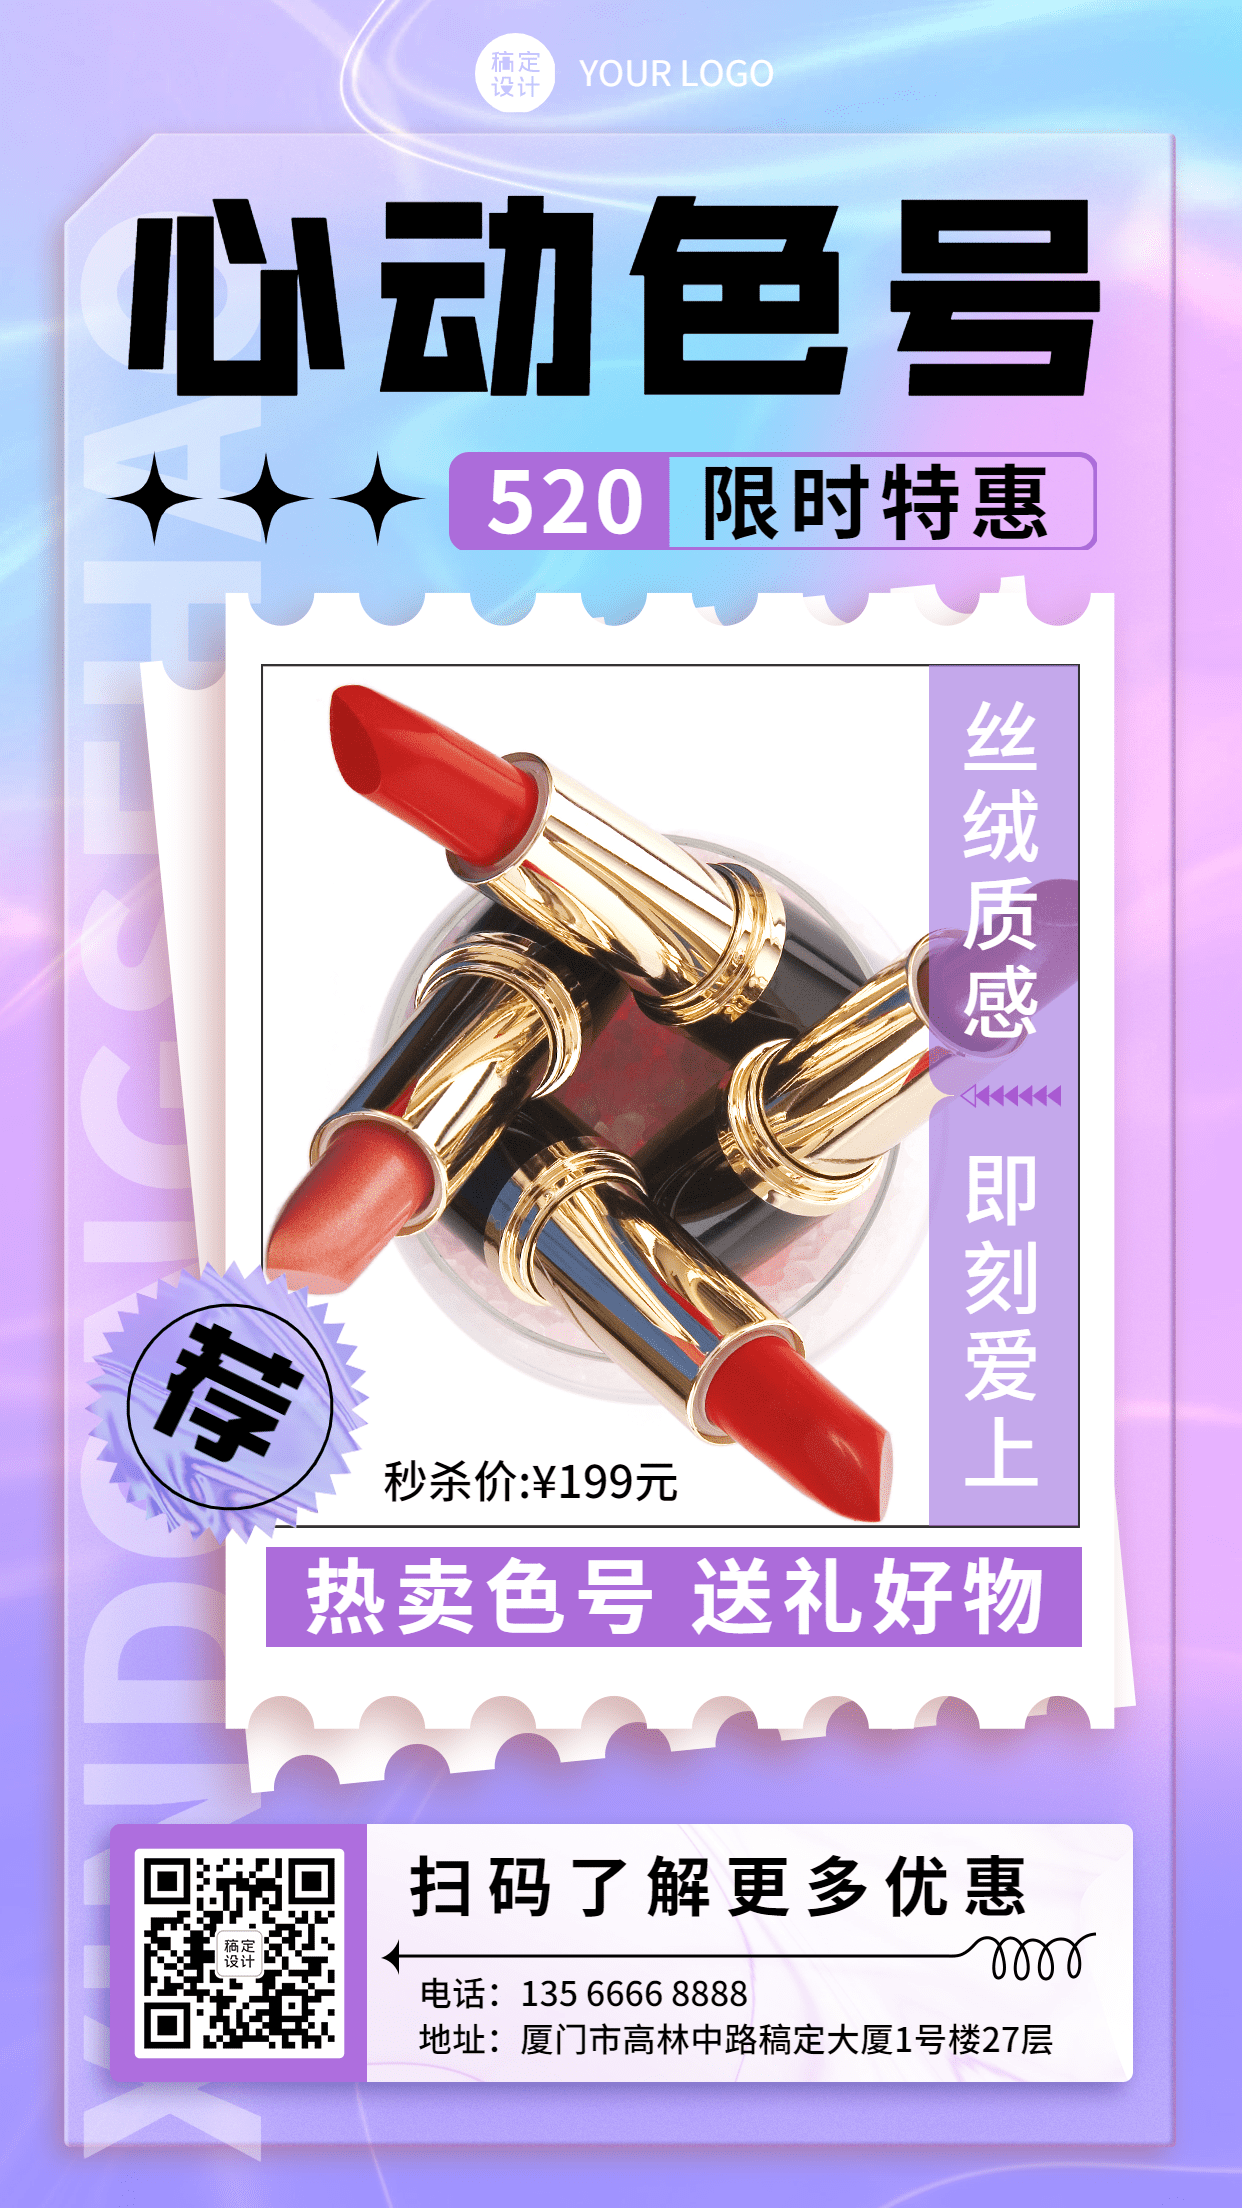 520情人节美容美妆产品营销促销活动宣传海报